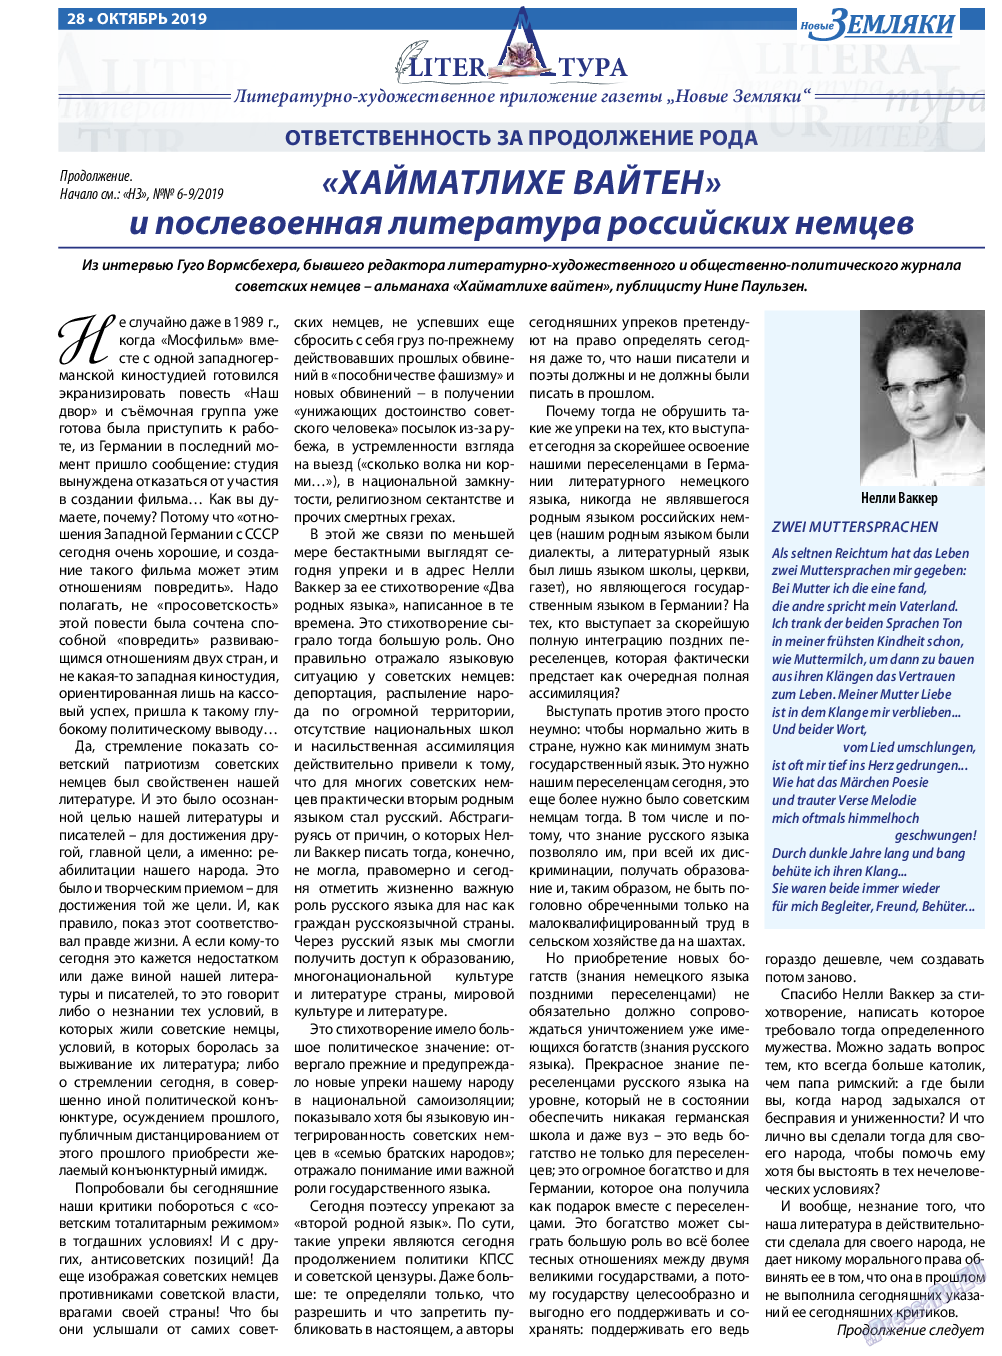 Новые Земляки, газета. 2019 №10 стр.28